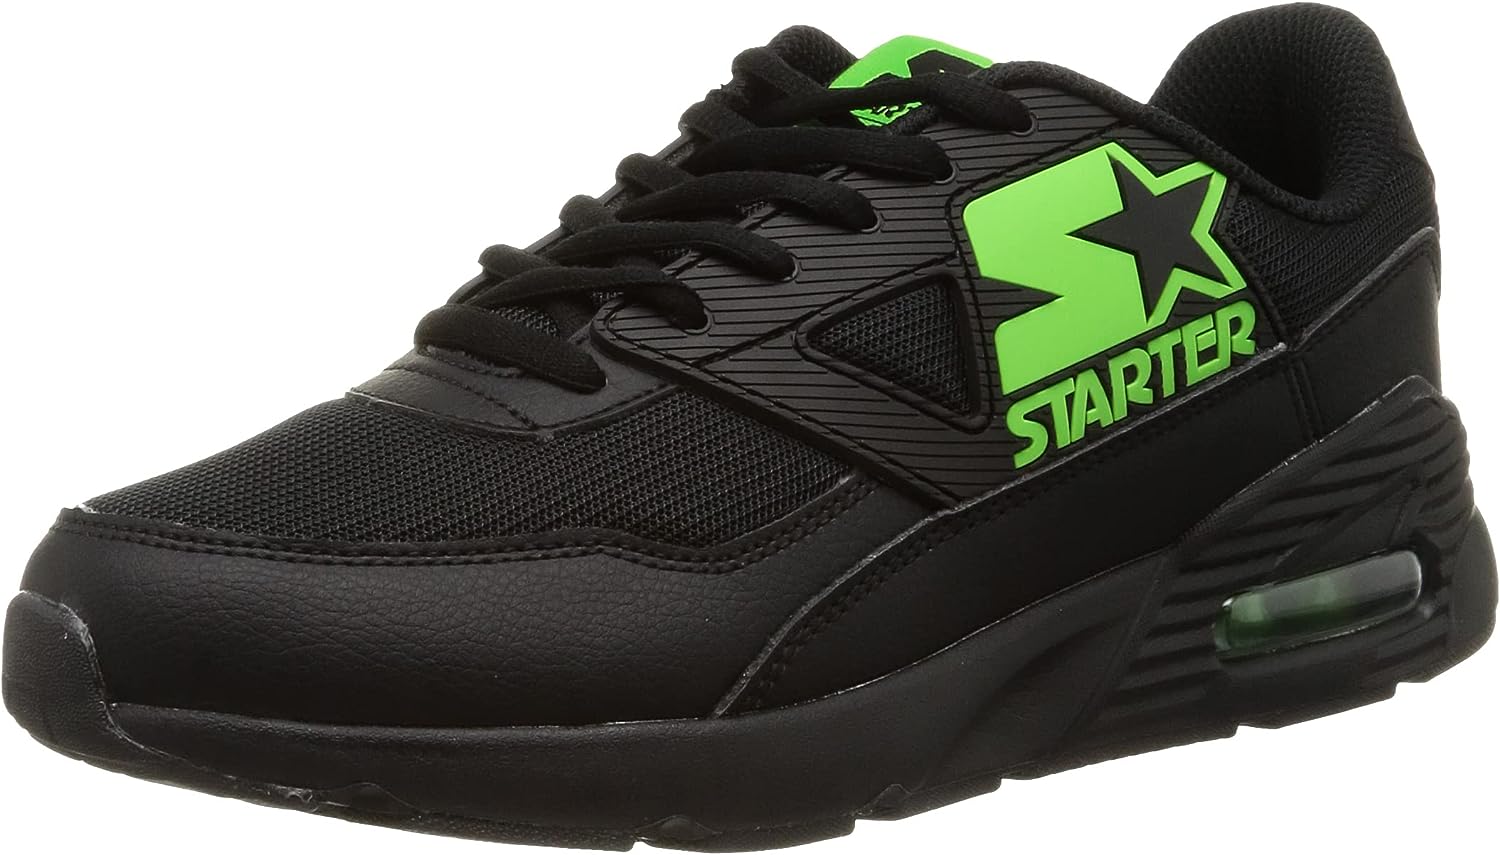 STARTER(スターター) Men's Sneaker, Black/Lime, 25.5 cm 2E